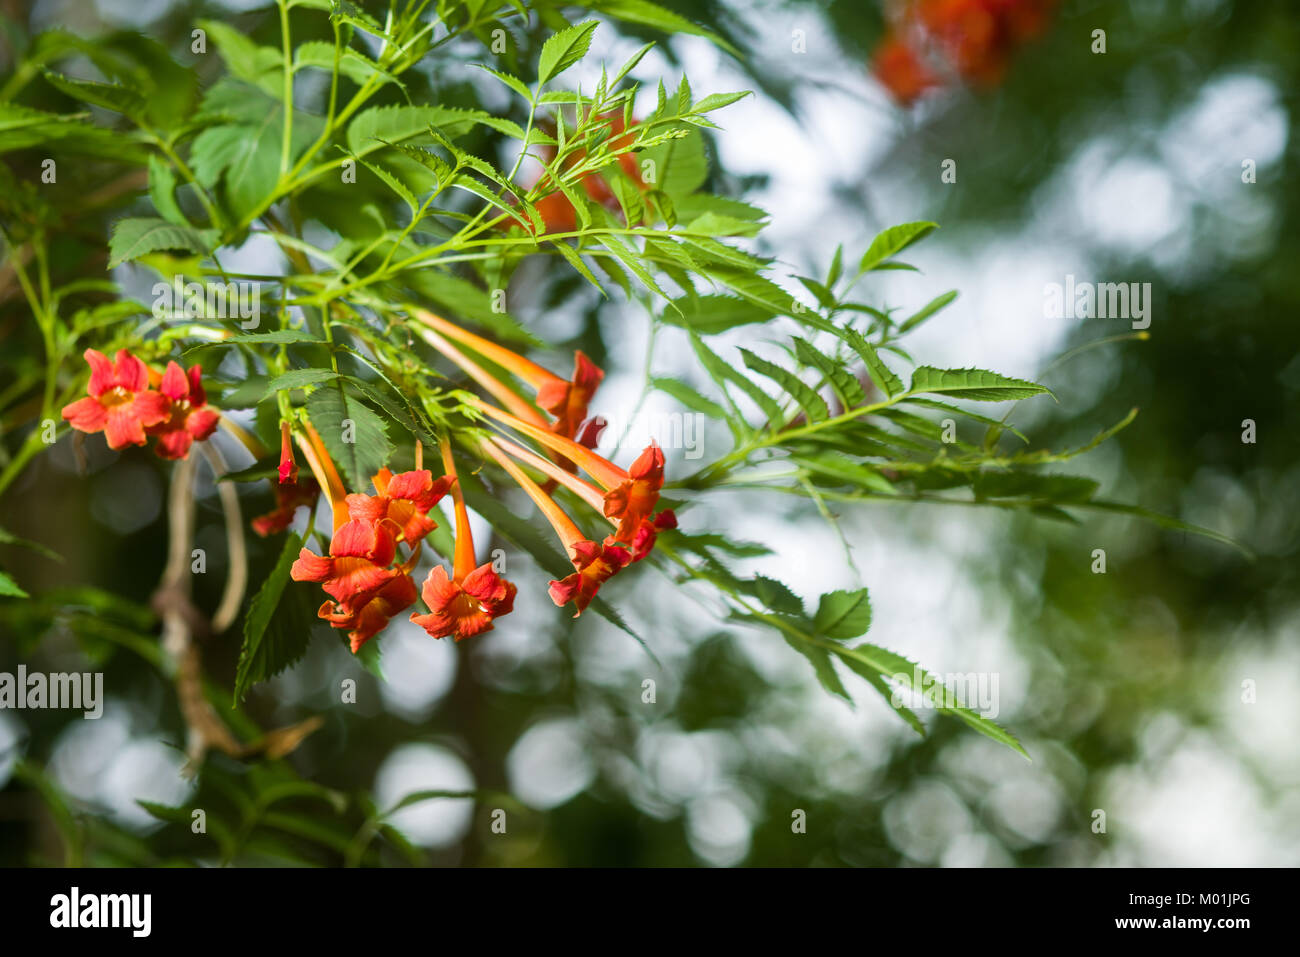 Trompette trompette Orange ou rampante de la vigne (campsis radicans, Bignonia radicans, Tecoma radicans) montrant les fleurs et les feuilles, Kenya, Afrique de l'Est Banque D'Images